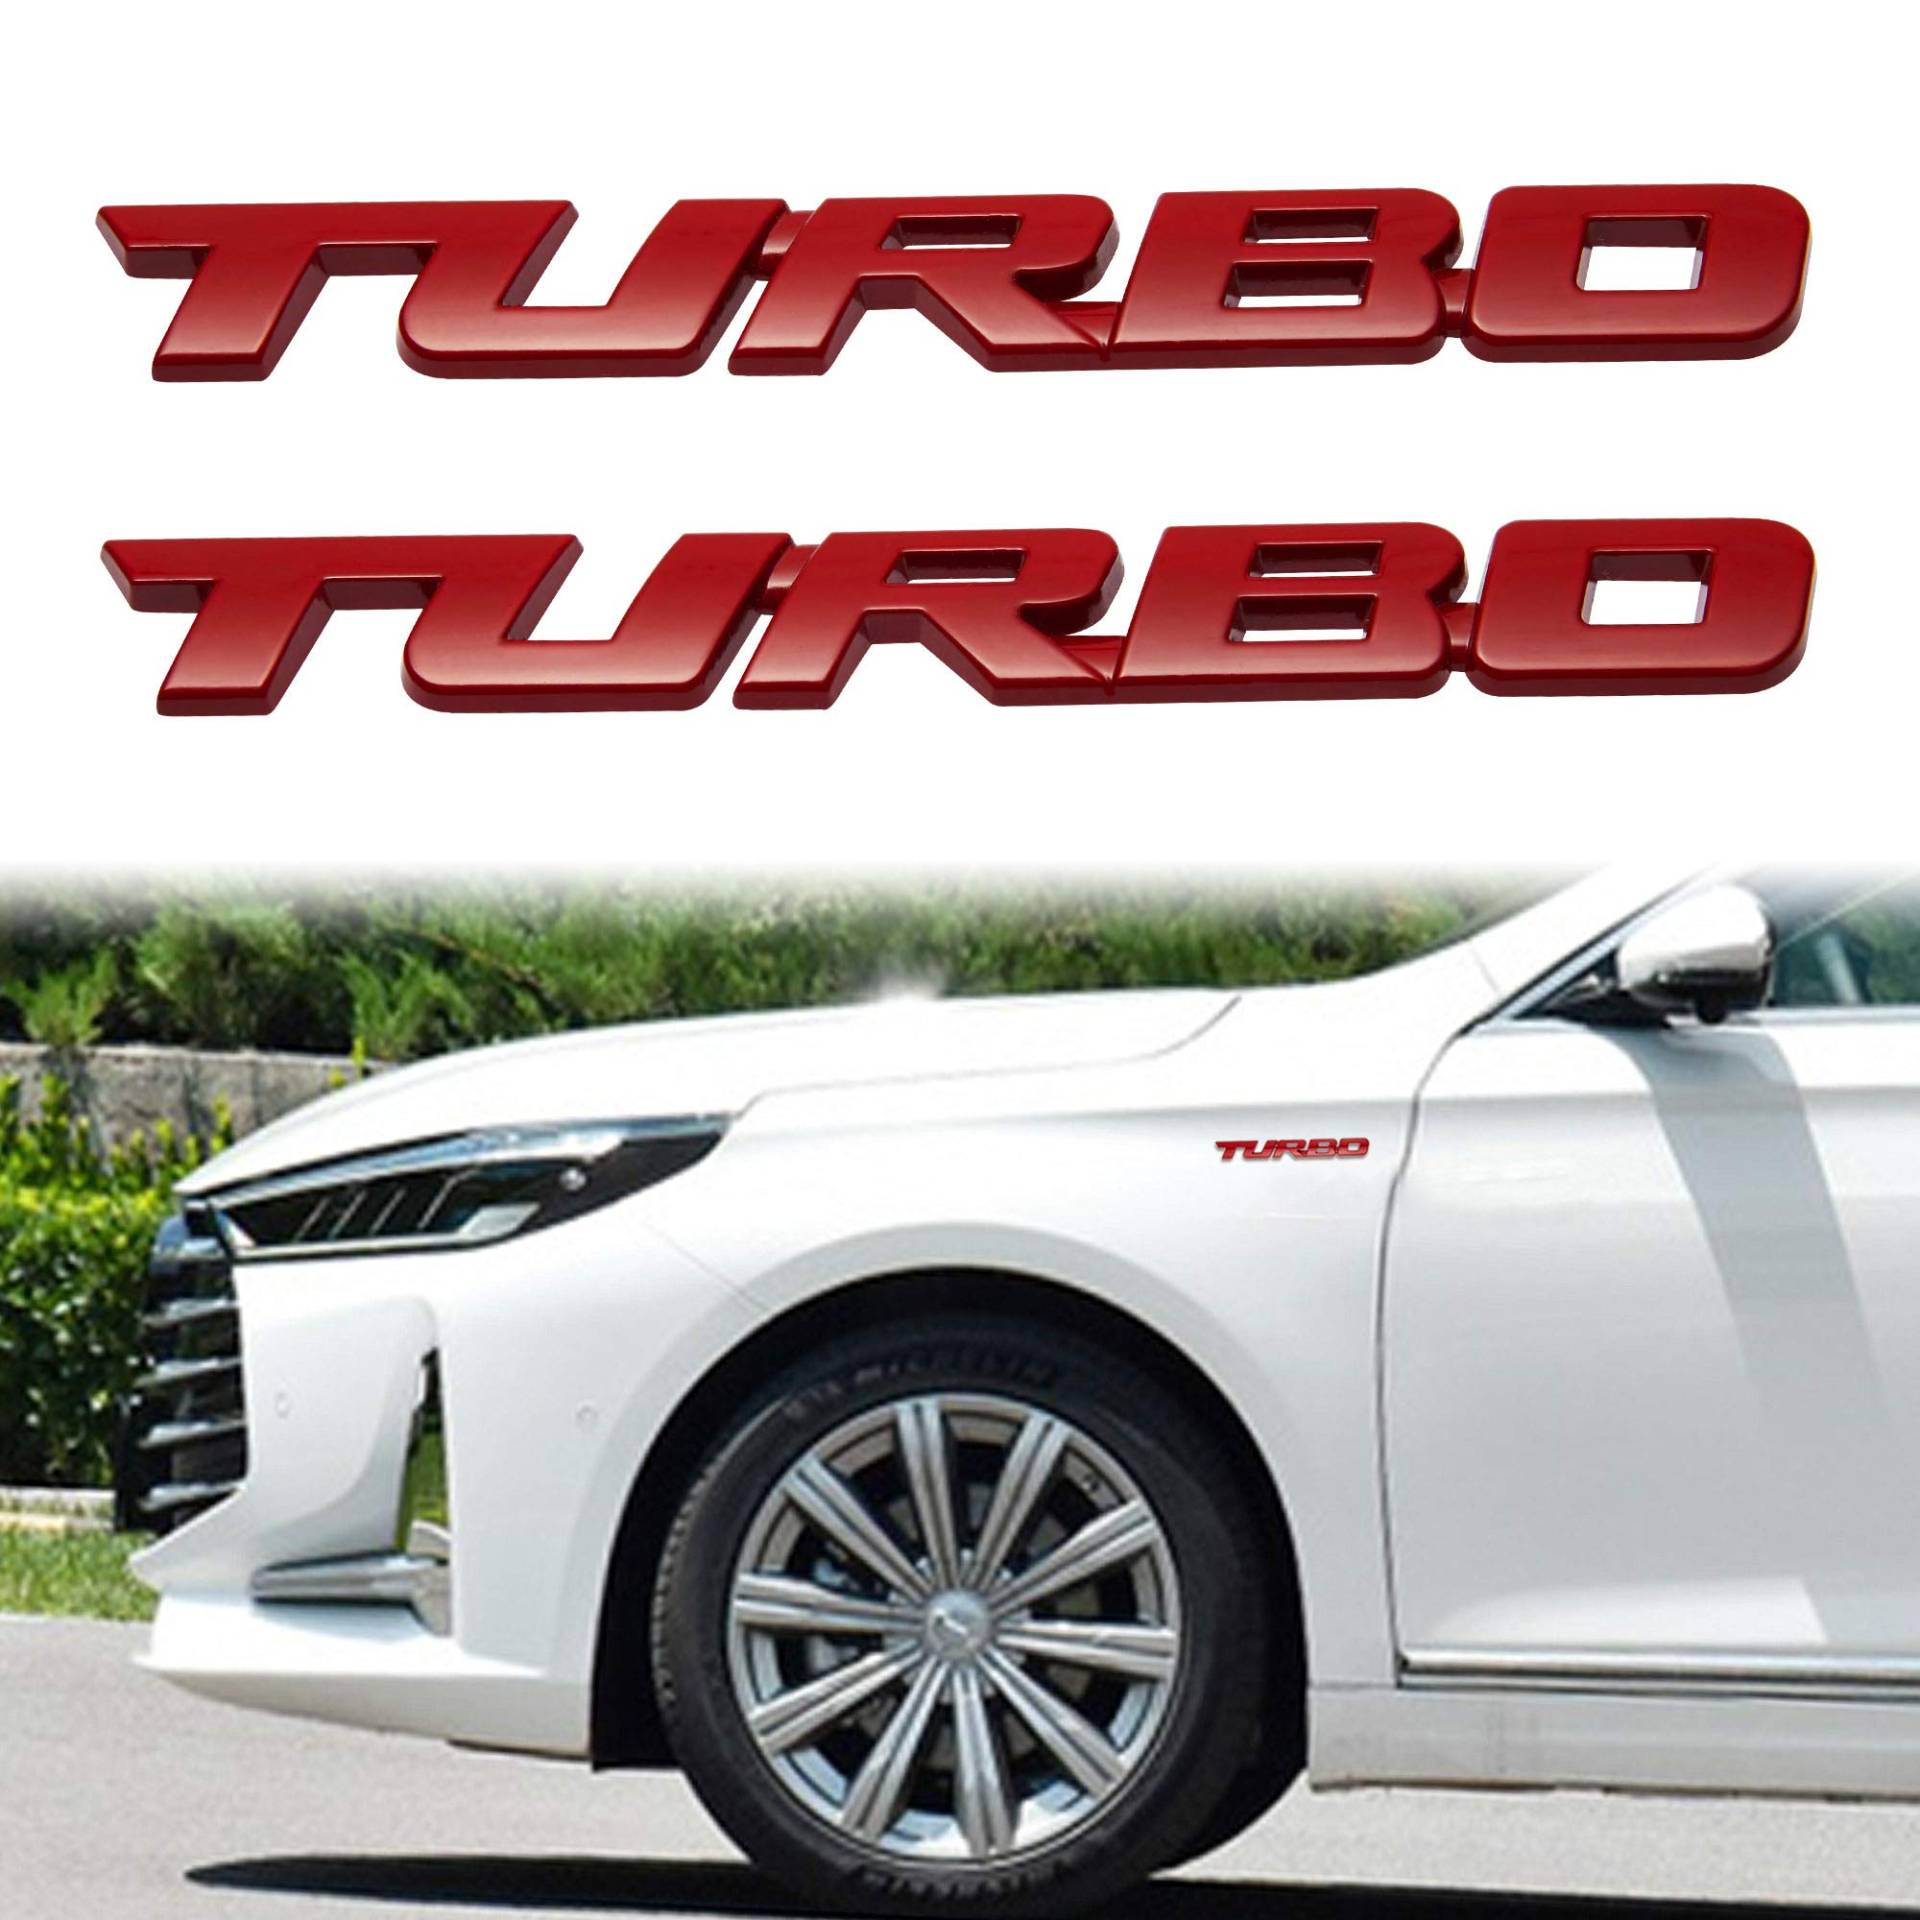 TOMALL 2 Stück 3D-Metall-Turbo-Premium-Auto-Seiten-Kotflügel-Emblem, Aufkleber für alle Autos, Zinklegierung, modifizierte Turbo-Embleme, Dekorationsaufkleber für Auto (rot-l) von TOMALL